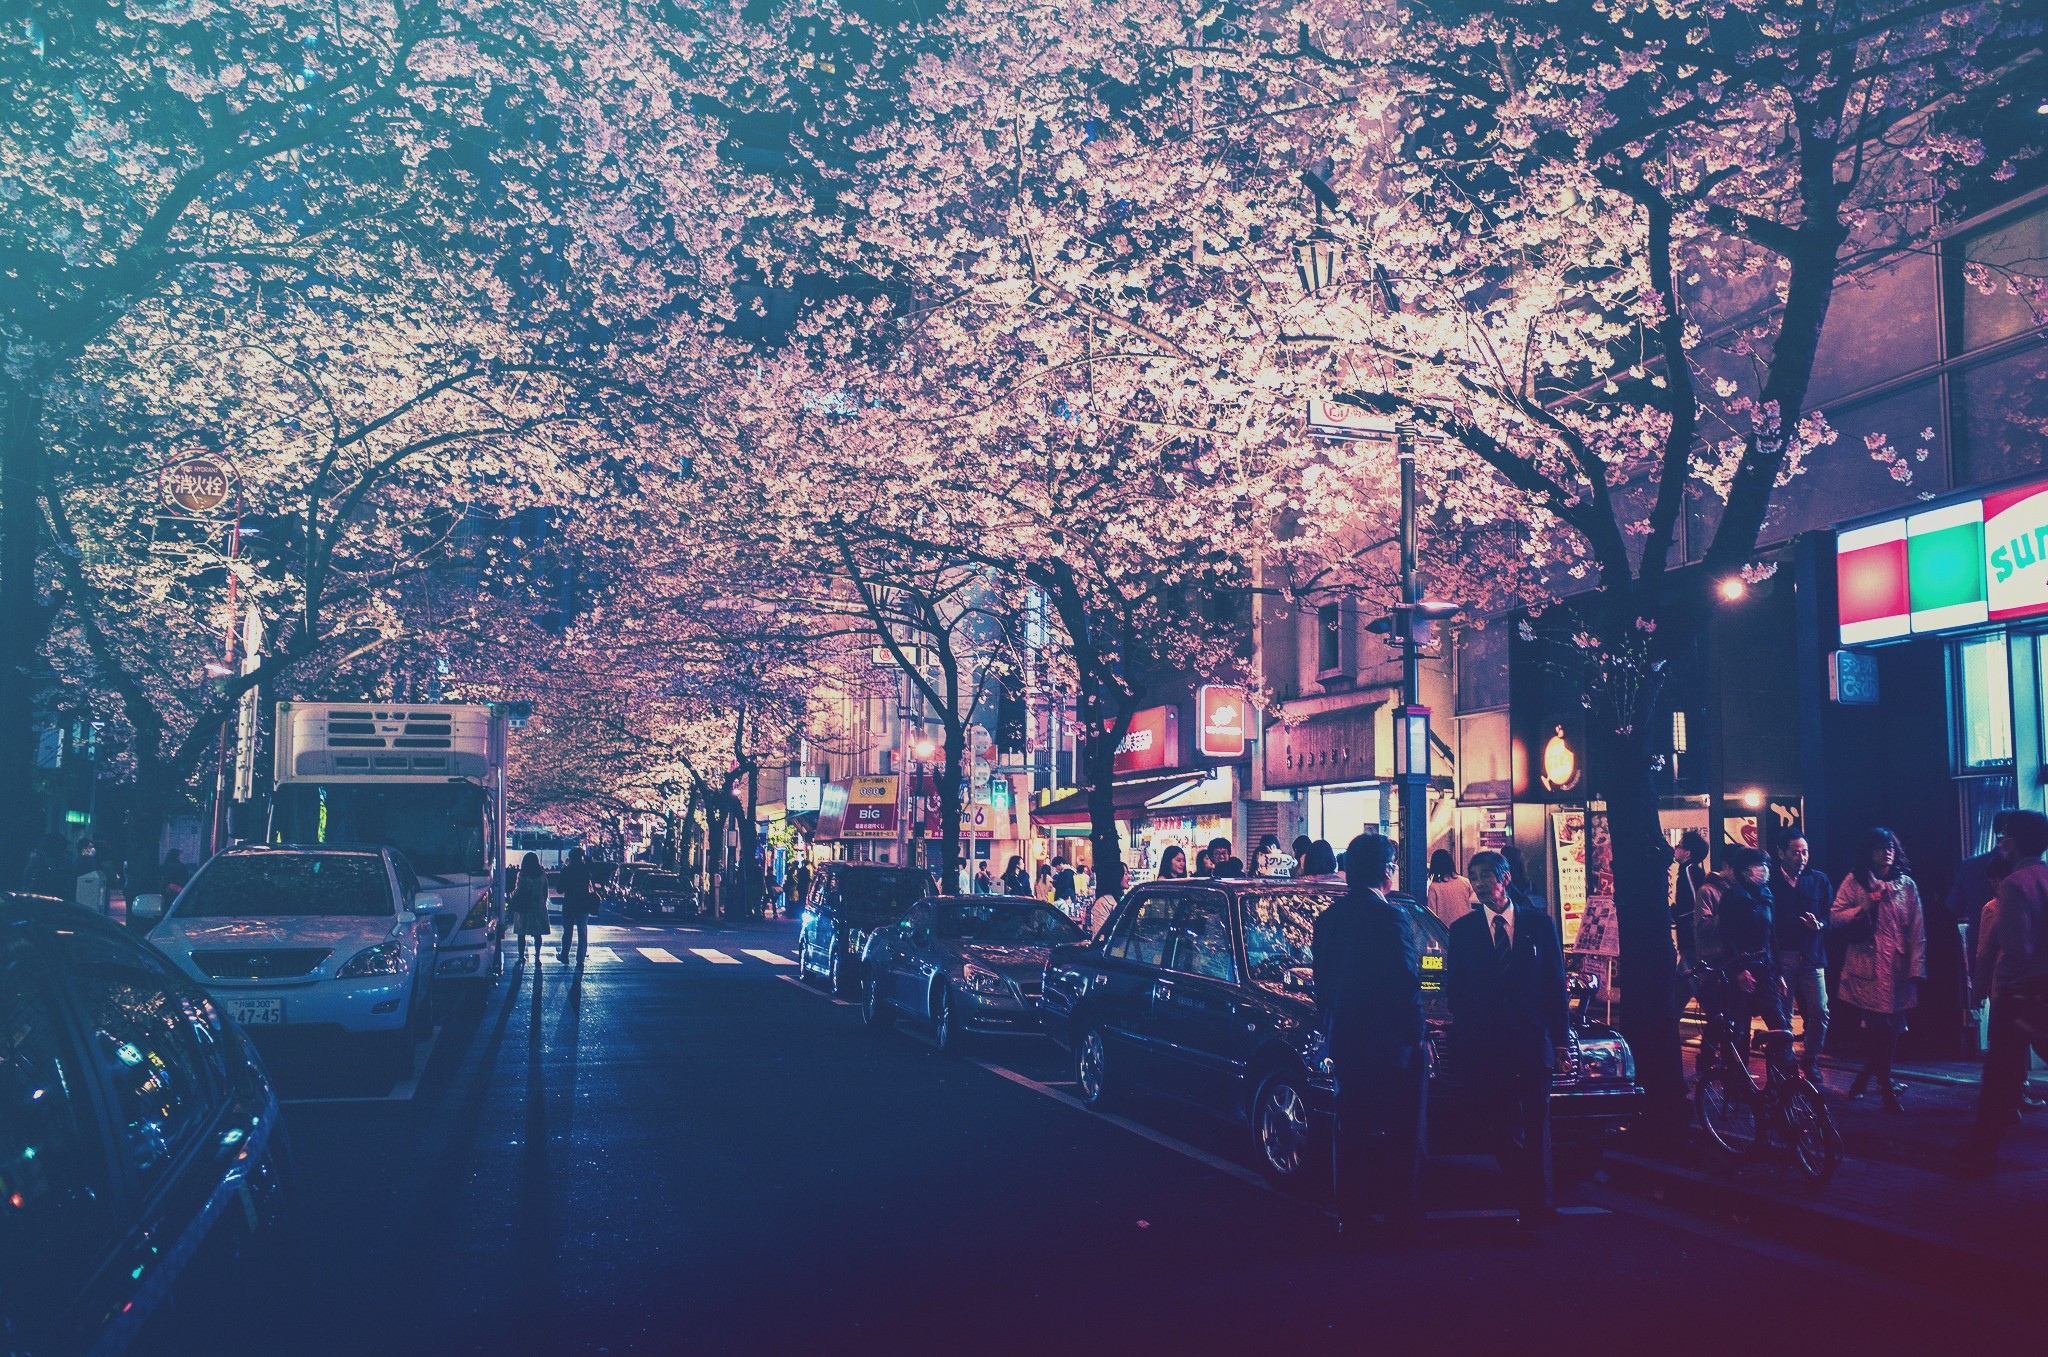 城市,日本,灯,街,路灯,过滤器,汽车,樱花,人物壁纸